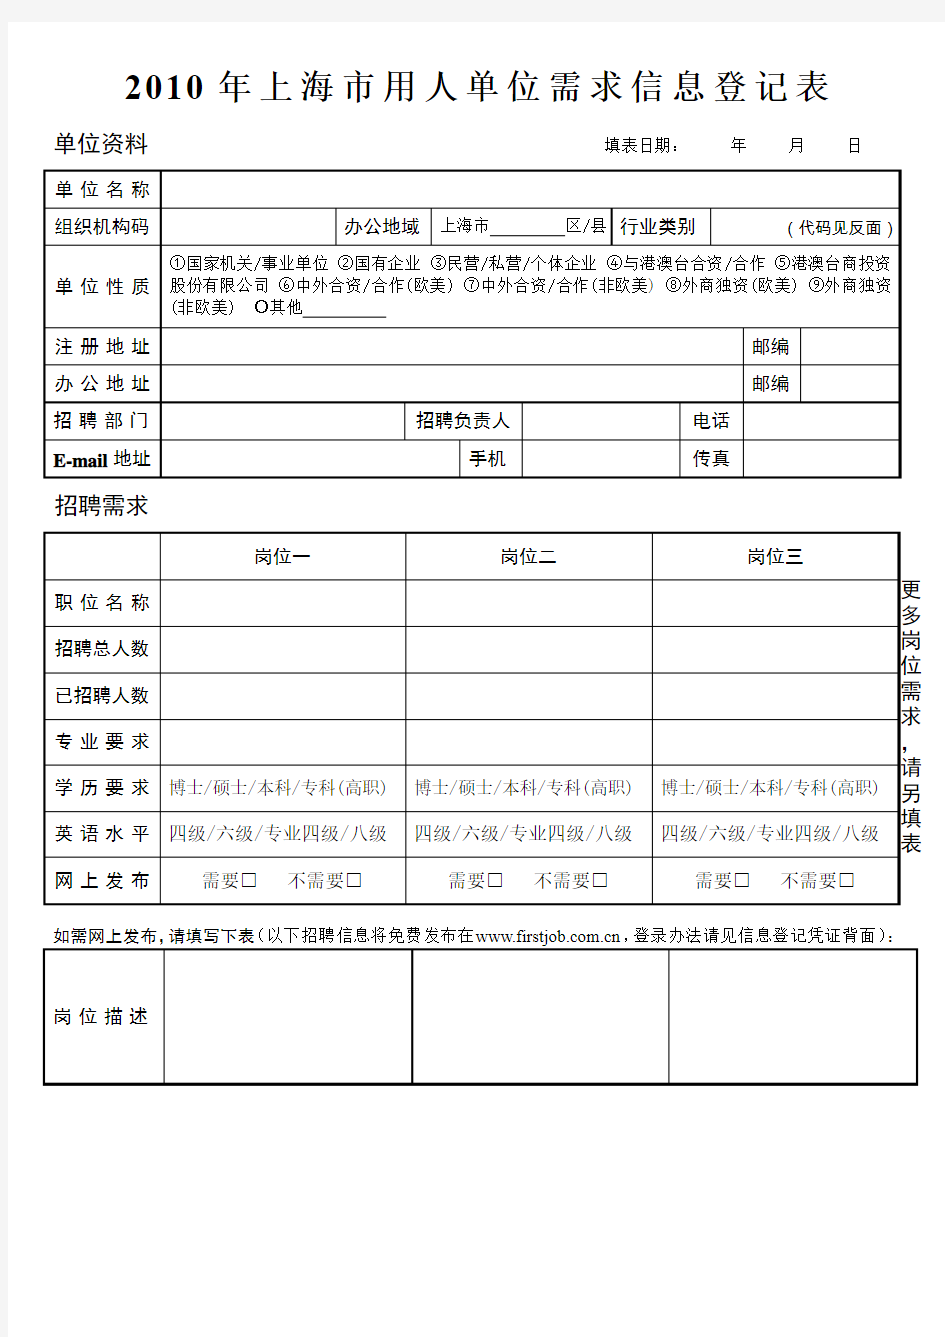 2010年上海市用人单位需求信息登记表